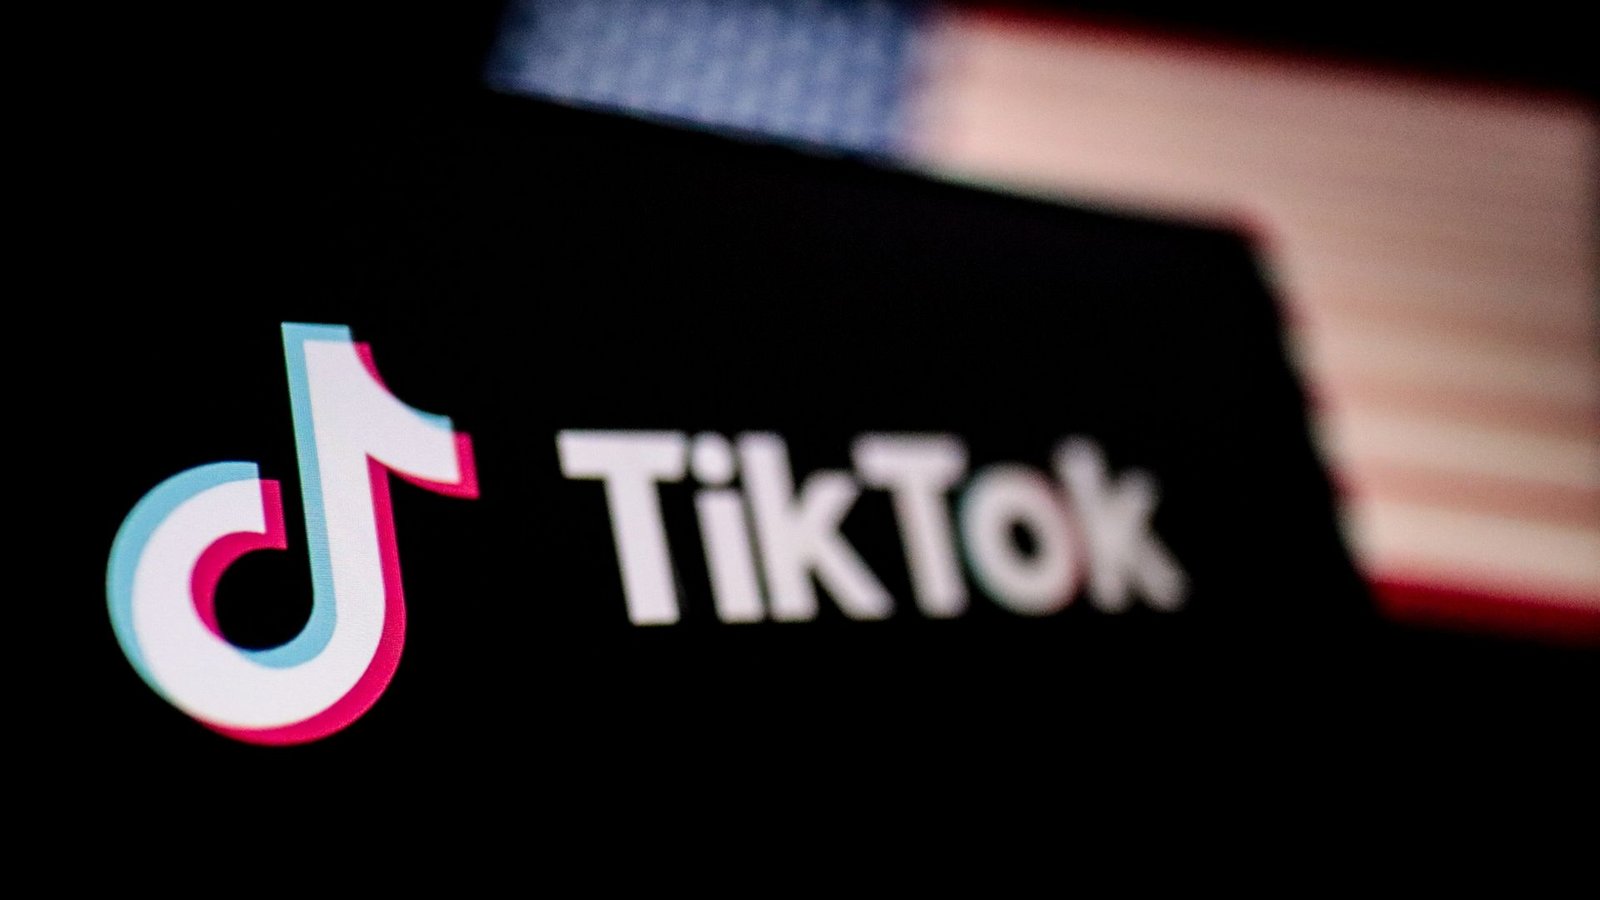 Bei TikTok wurden seit der Einführung der Meldepflicht knapp 508 Millionen Beiträge gemeldet und mehr als 348 Millionen Beiträge gelöscht.Foto: Hasan Mrad/IMAGESLIVE via ZUMA Press Wire/dpa